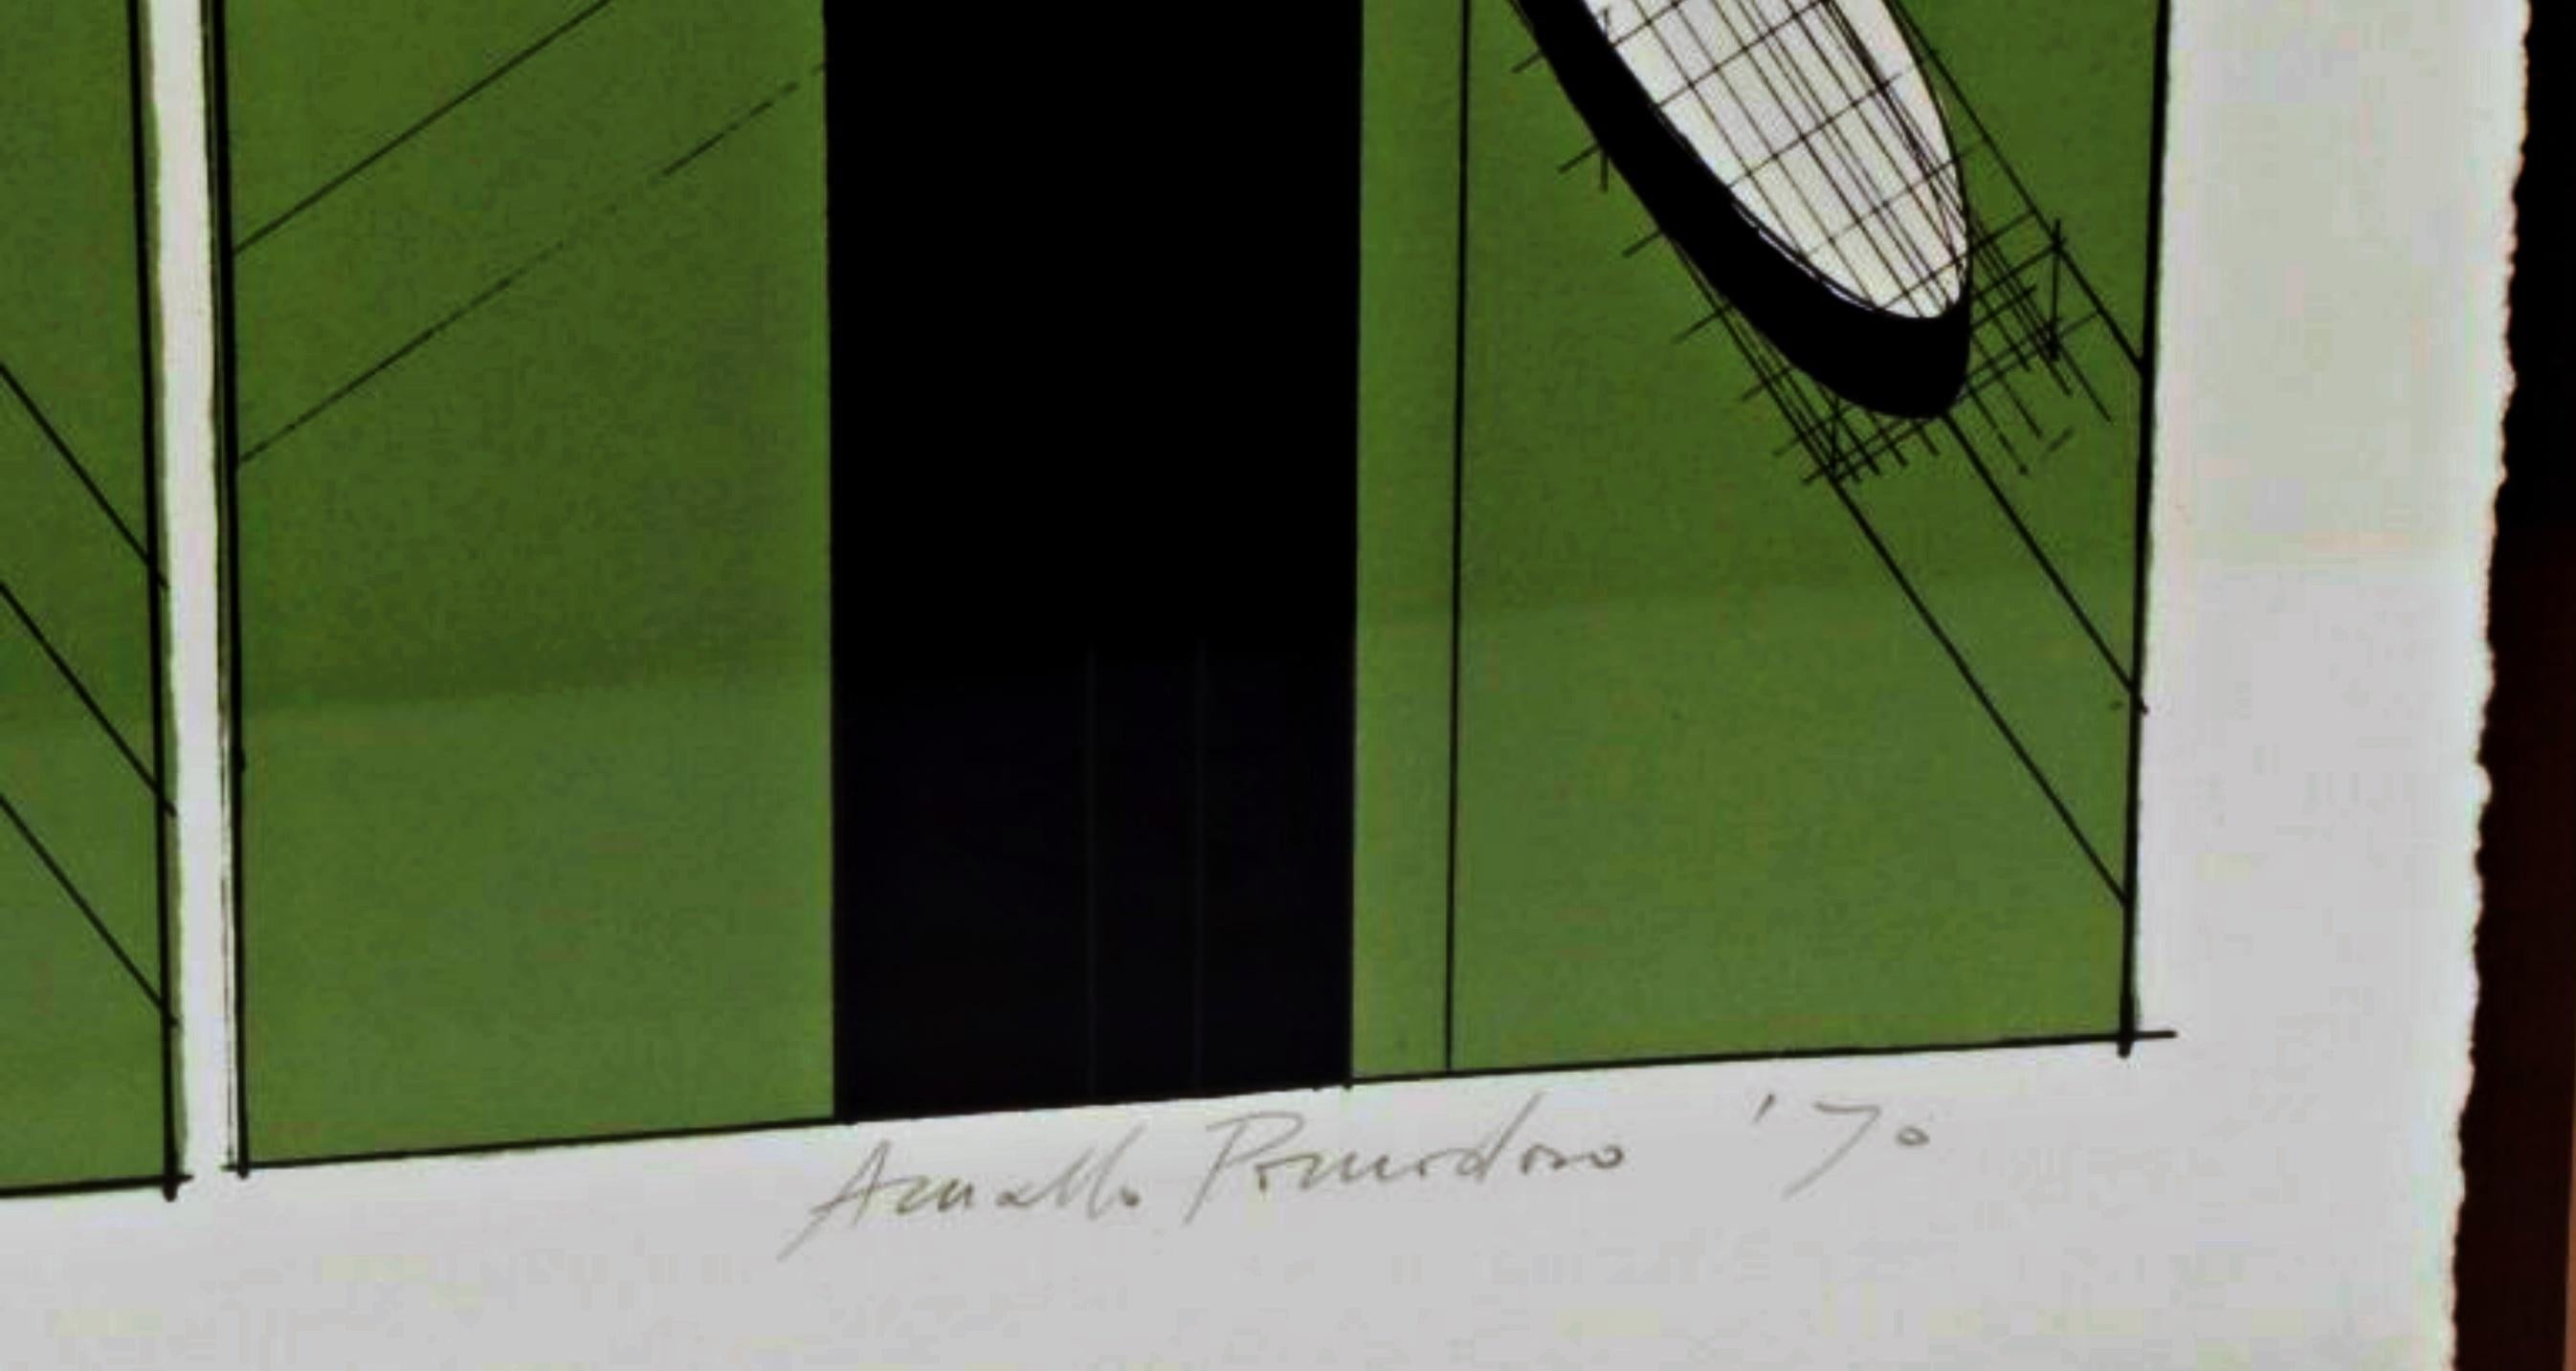 Arnaldo Pomodoro
Sans titre, 1970
Lithographie couleur sur papier vélin
Signé à la main et numéroté 15/15
Signé à la main par l'artiste, signé et daté au crayon dans la marge inférieure droite, édition limitée notée au crayon dans la marge